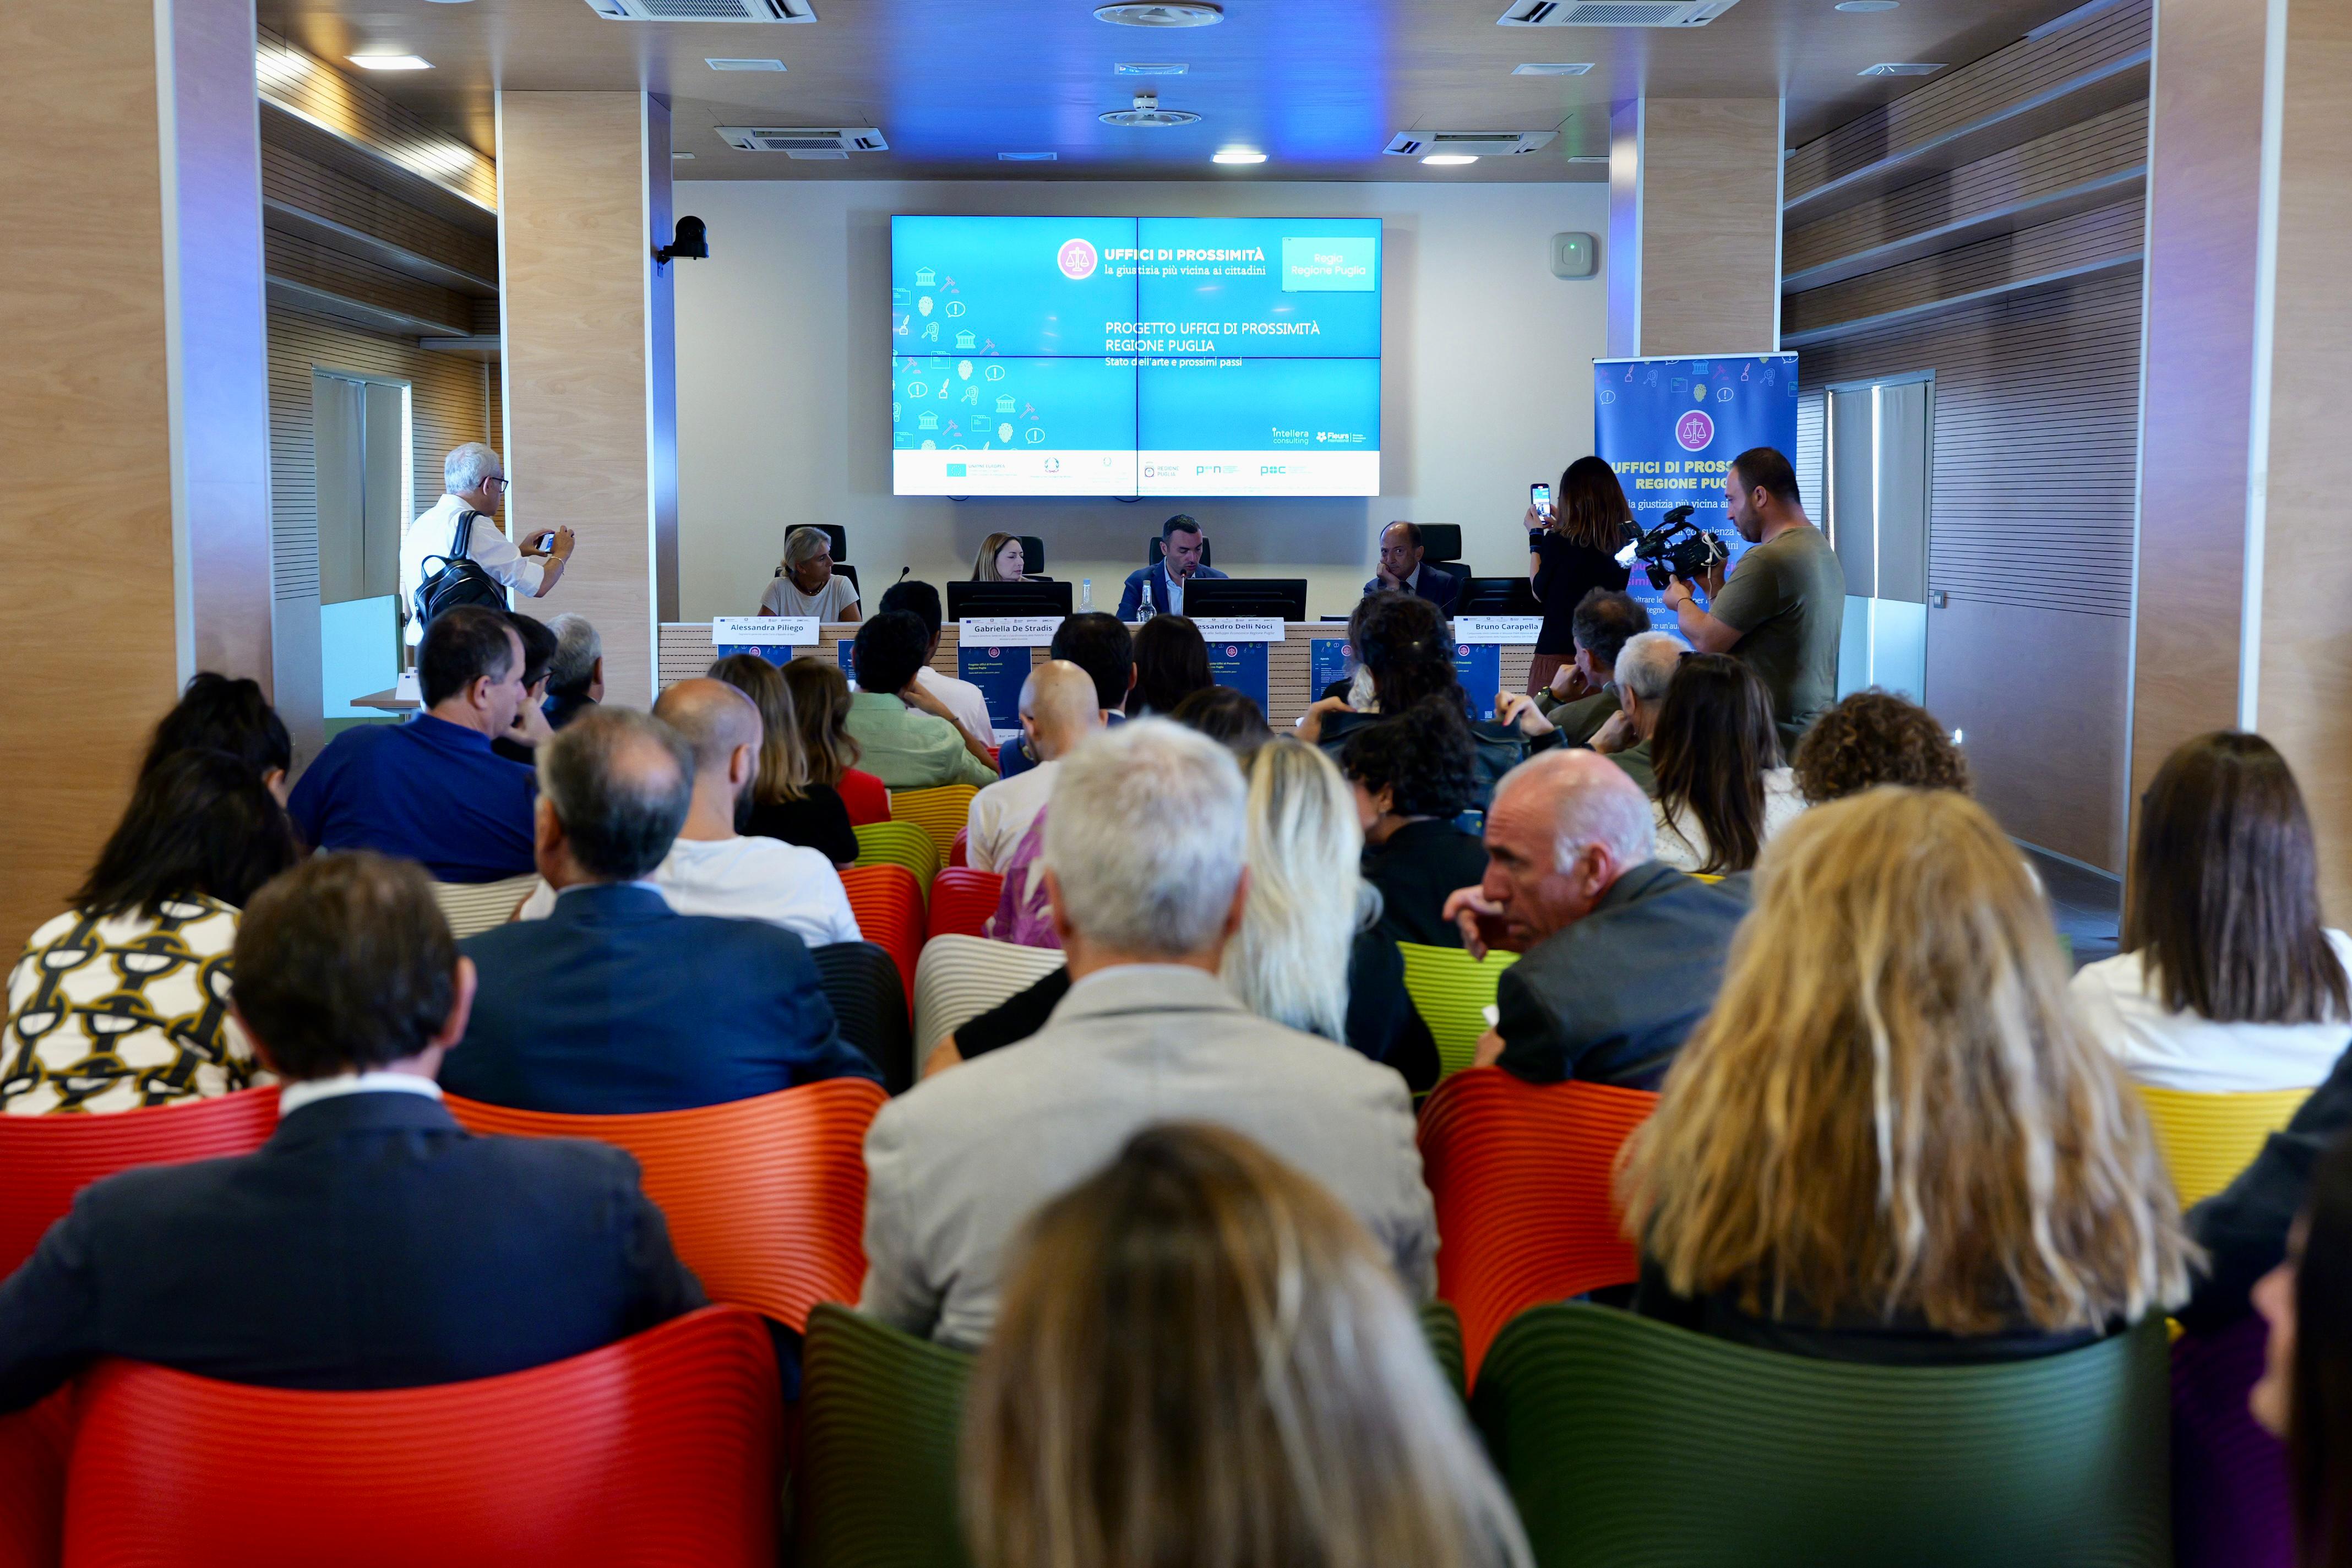 Galleria Il Progetto Uffici di Prossimità in Puglia: un passo concreto verso una giustizia più equa e accessibile - Diapositiva 3 di 4